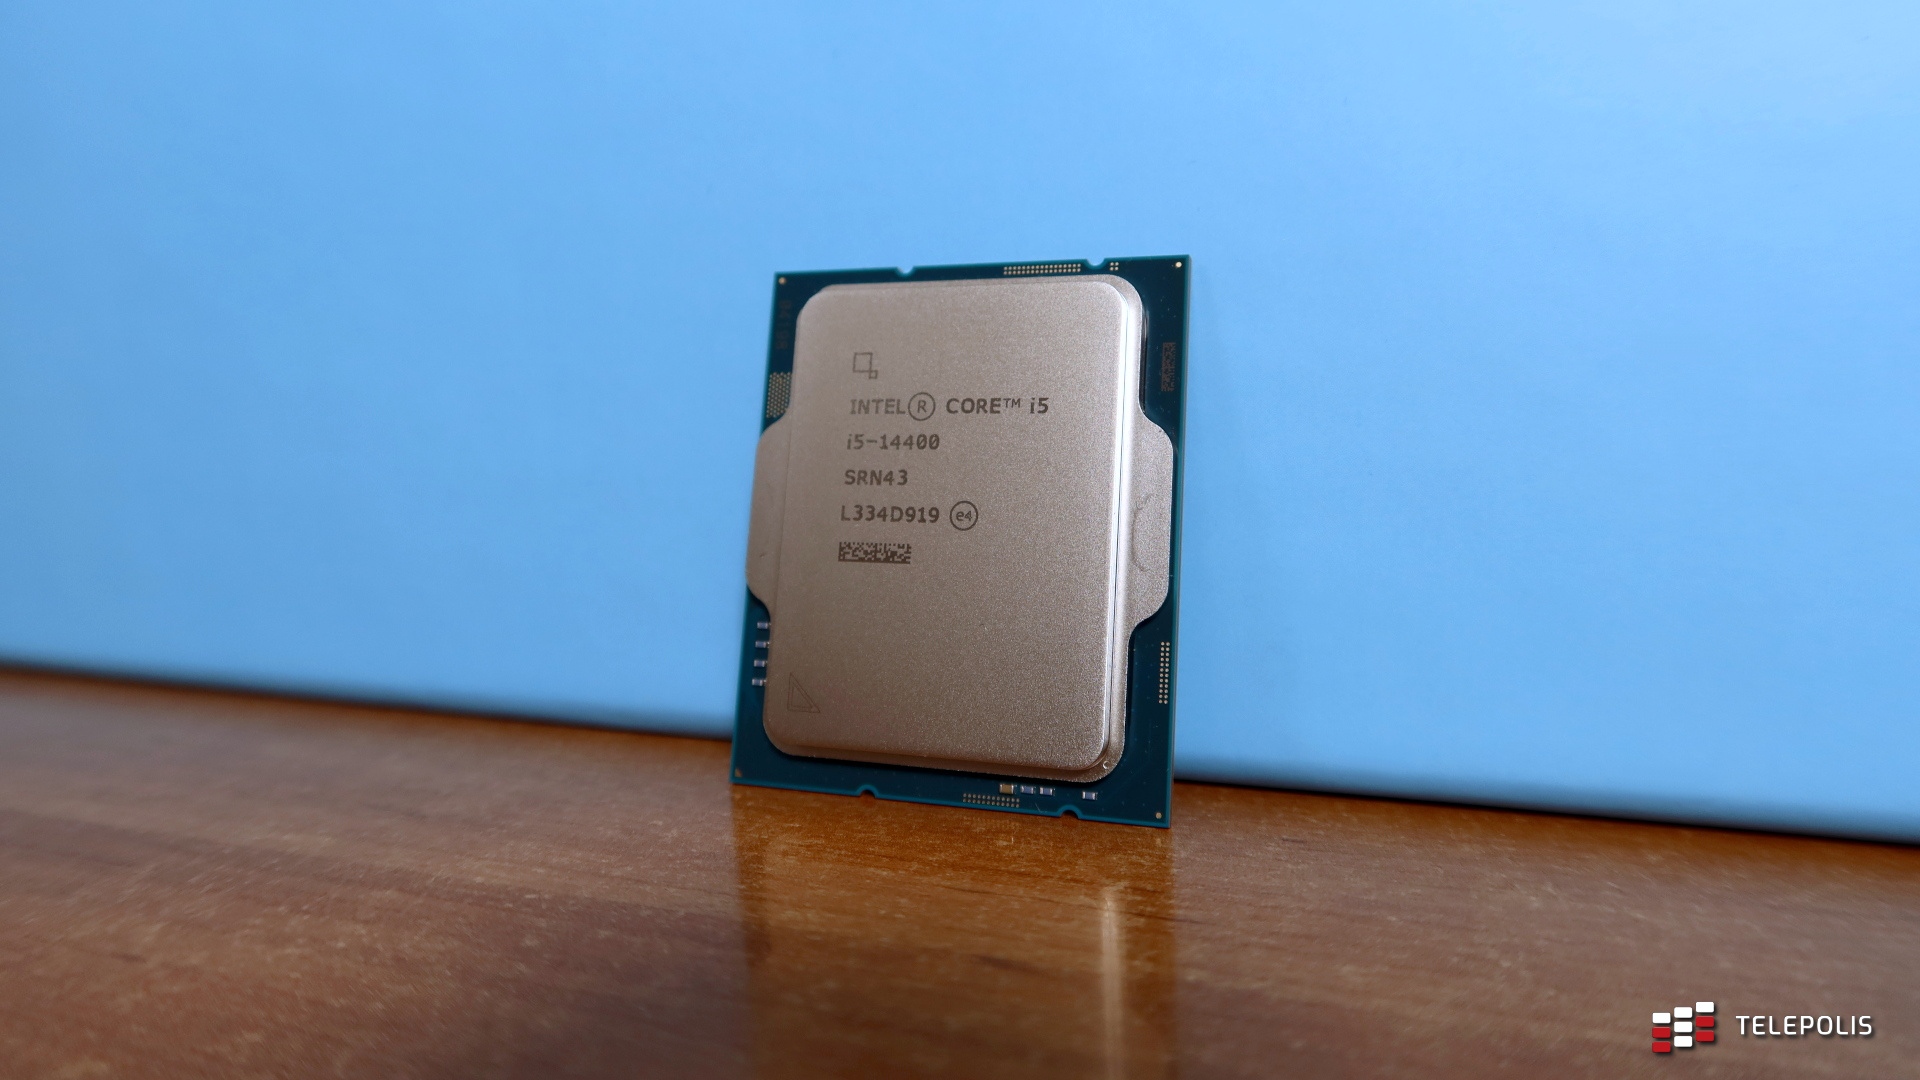 Tanie procesory Intela zadebiutują w przyszłym miesiącu